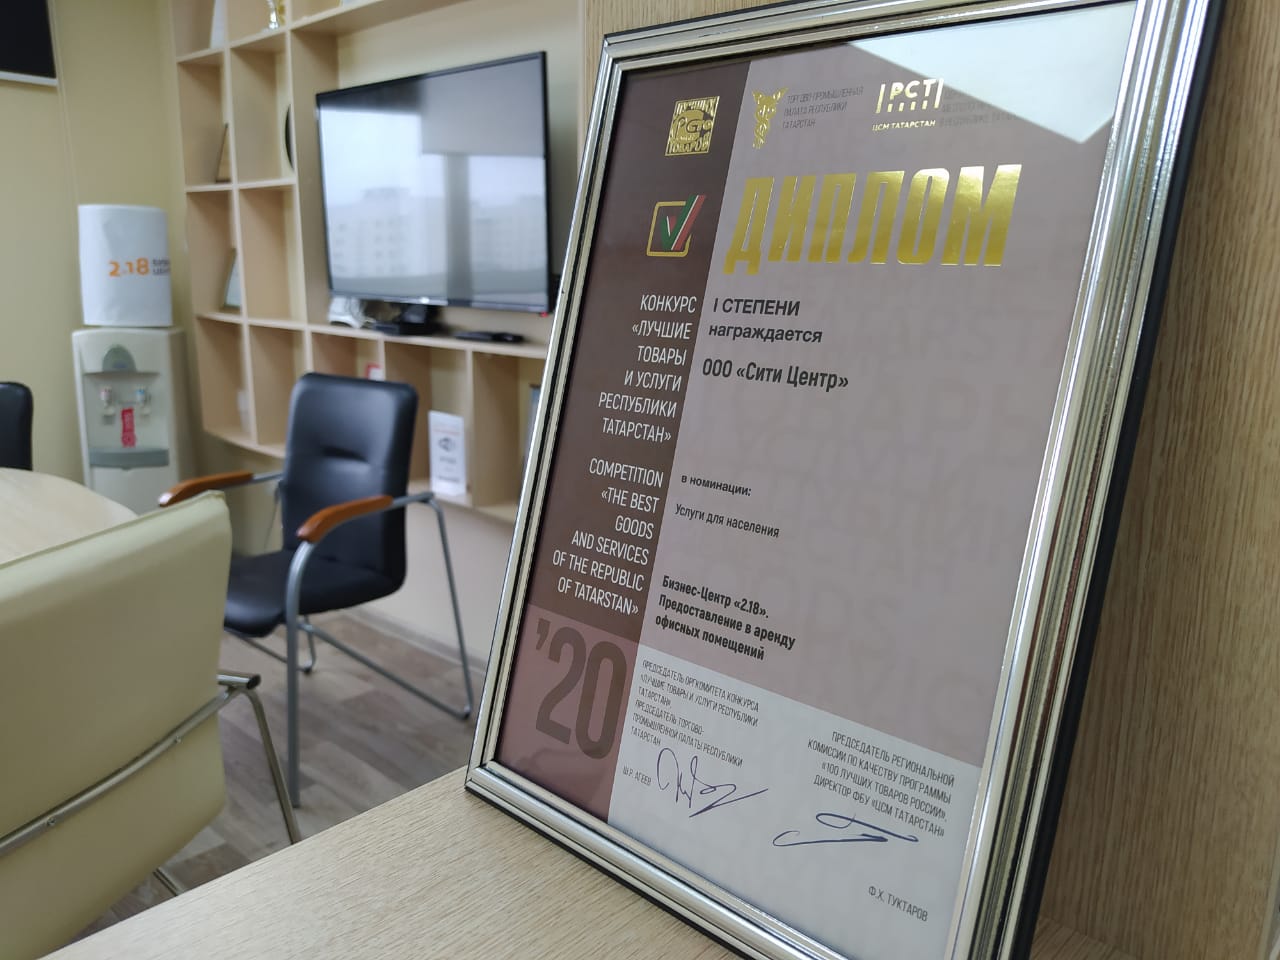 Бизнес-Центр «2.18» вошел в список лучших услуг Республики Татарстан